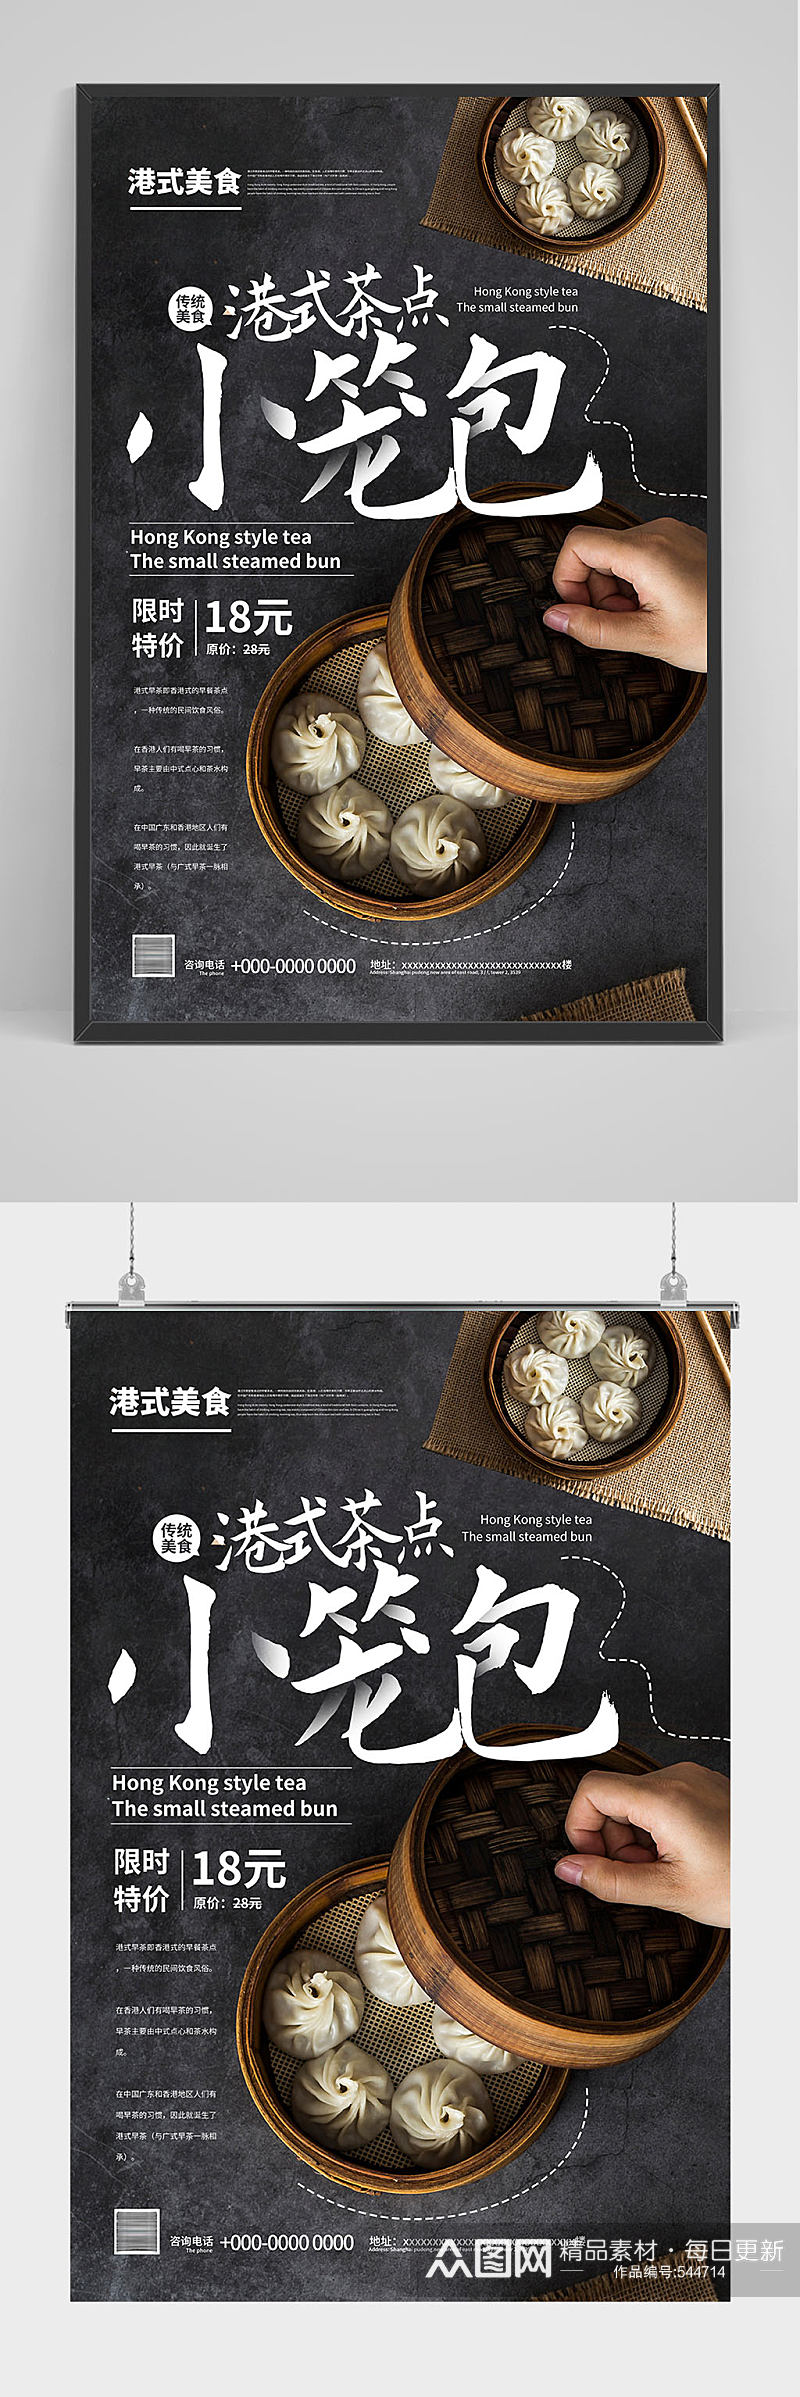 港式茶点小笼包包子海报设计素材